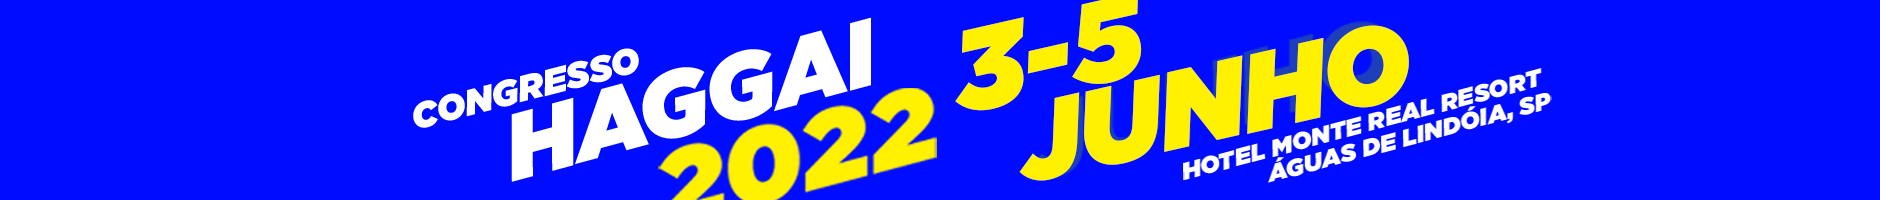 Congresso Haggai 2022 - 3 a 5 de Junho em Águas de Lindóia, SP